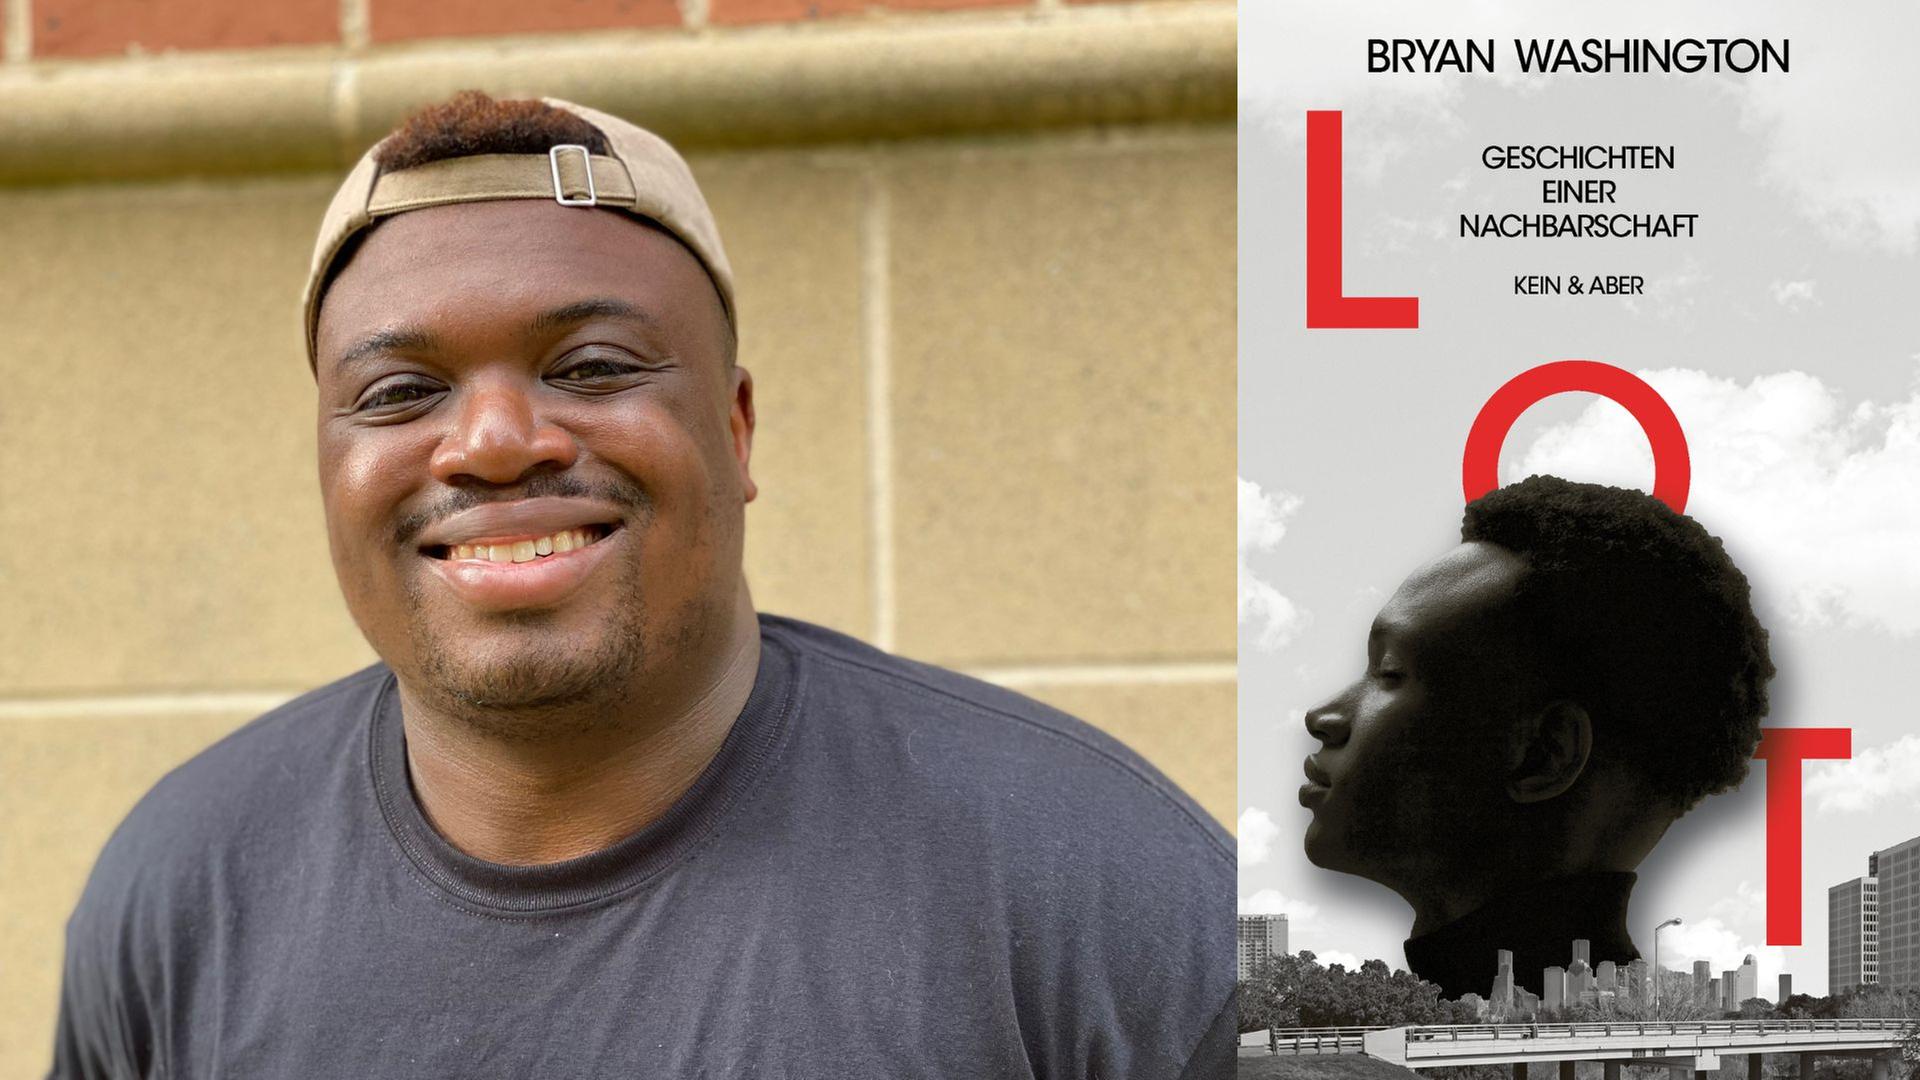 Bryan Washington: "LOT. Geschichten einer Nachbarschaft"
Zu sehen sind der Autor und das Buchcover